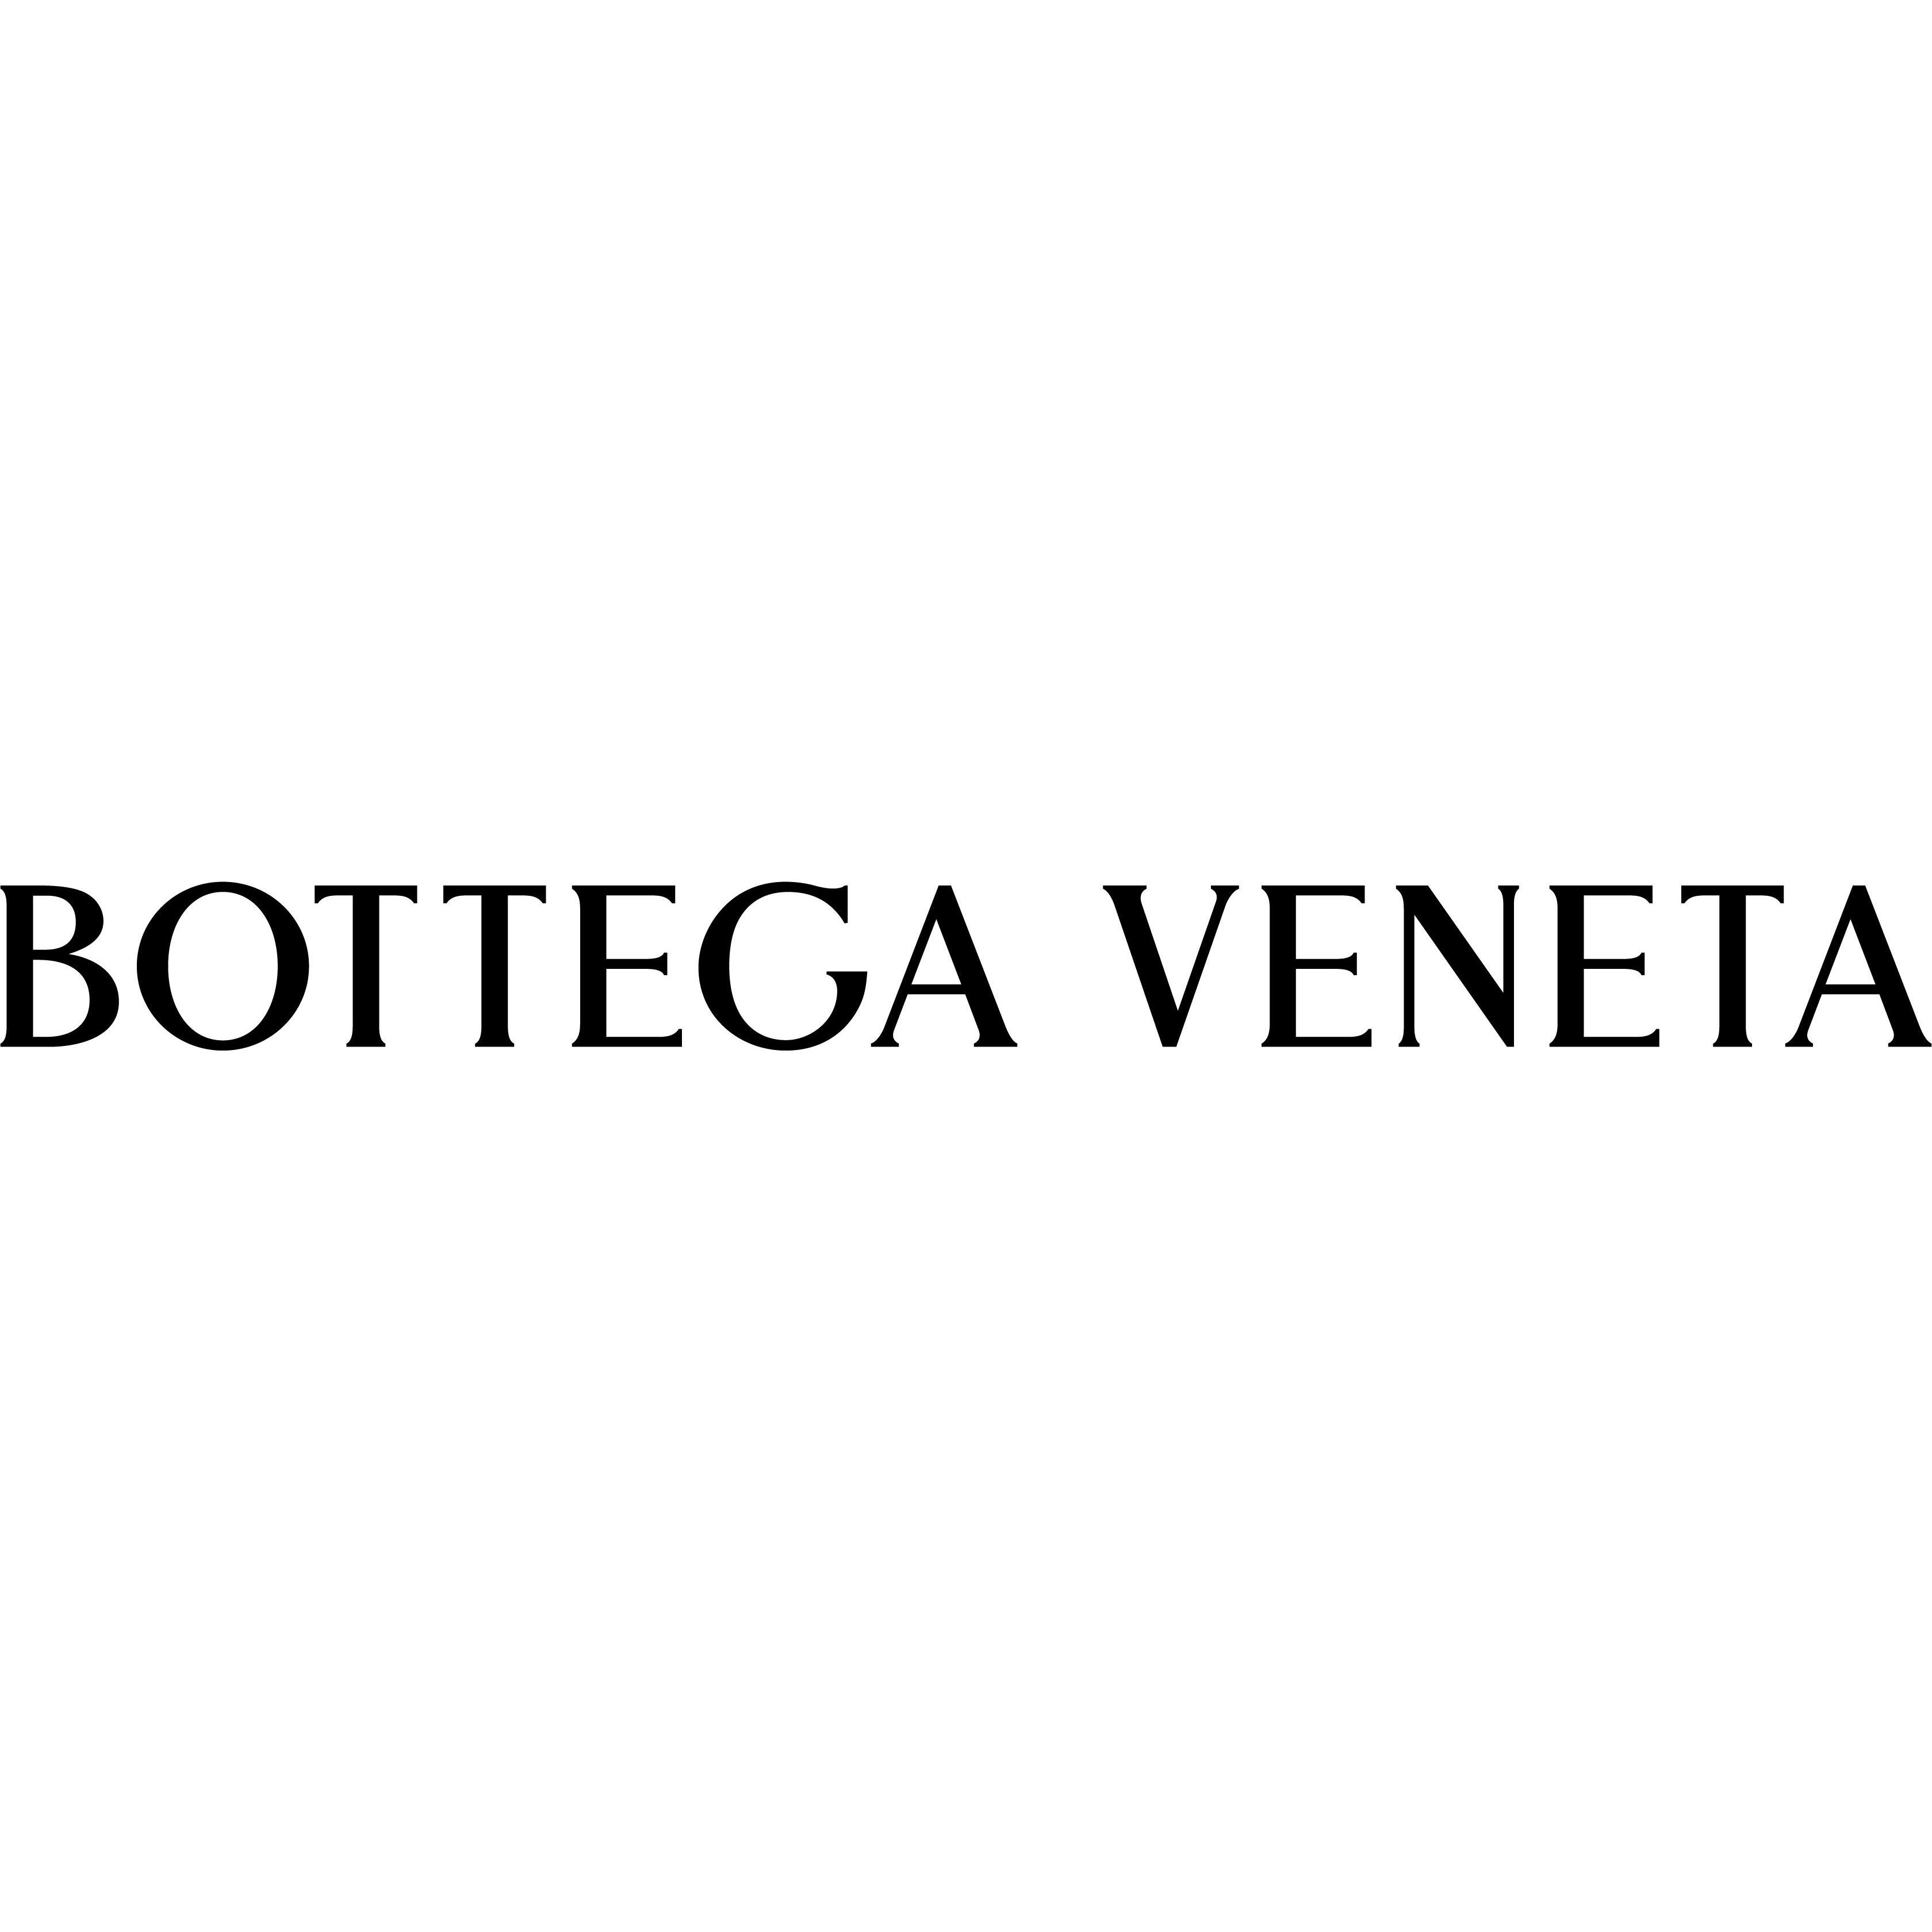 Bottega Veneta Bologna - Pelli per abbigliamento Bologna